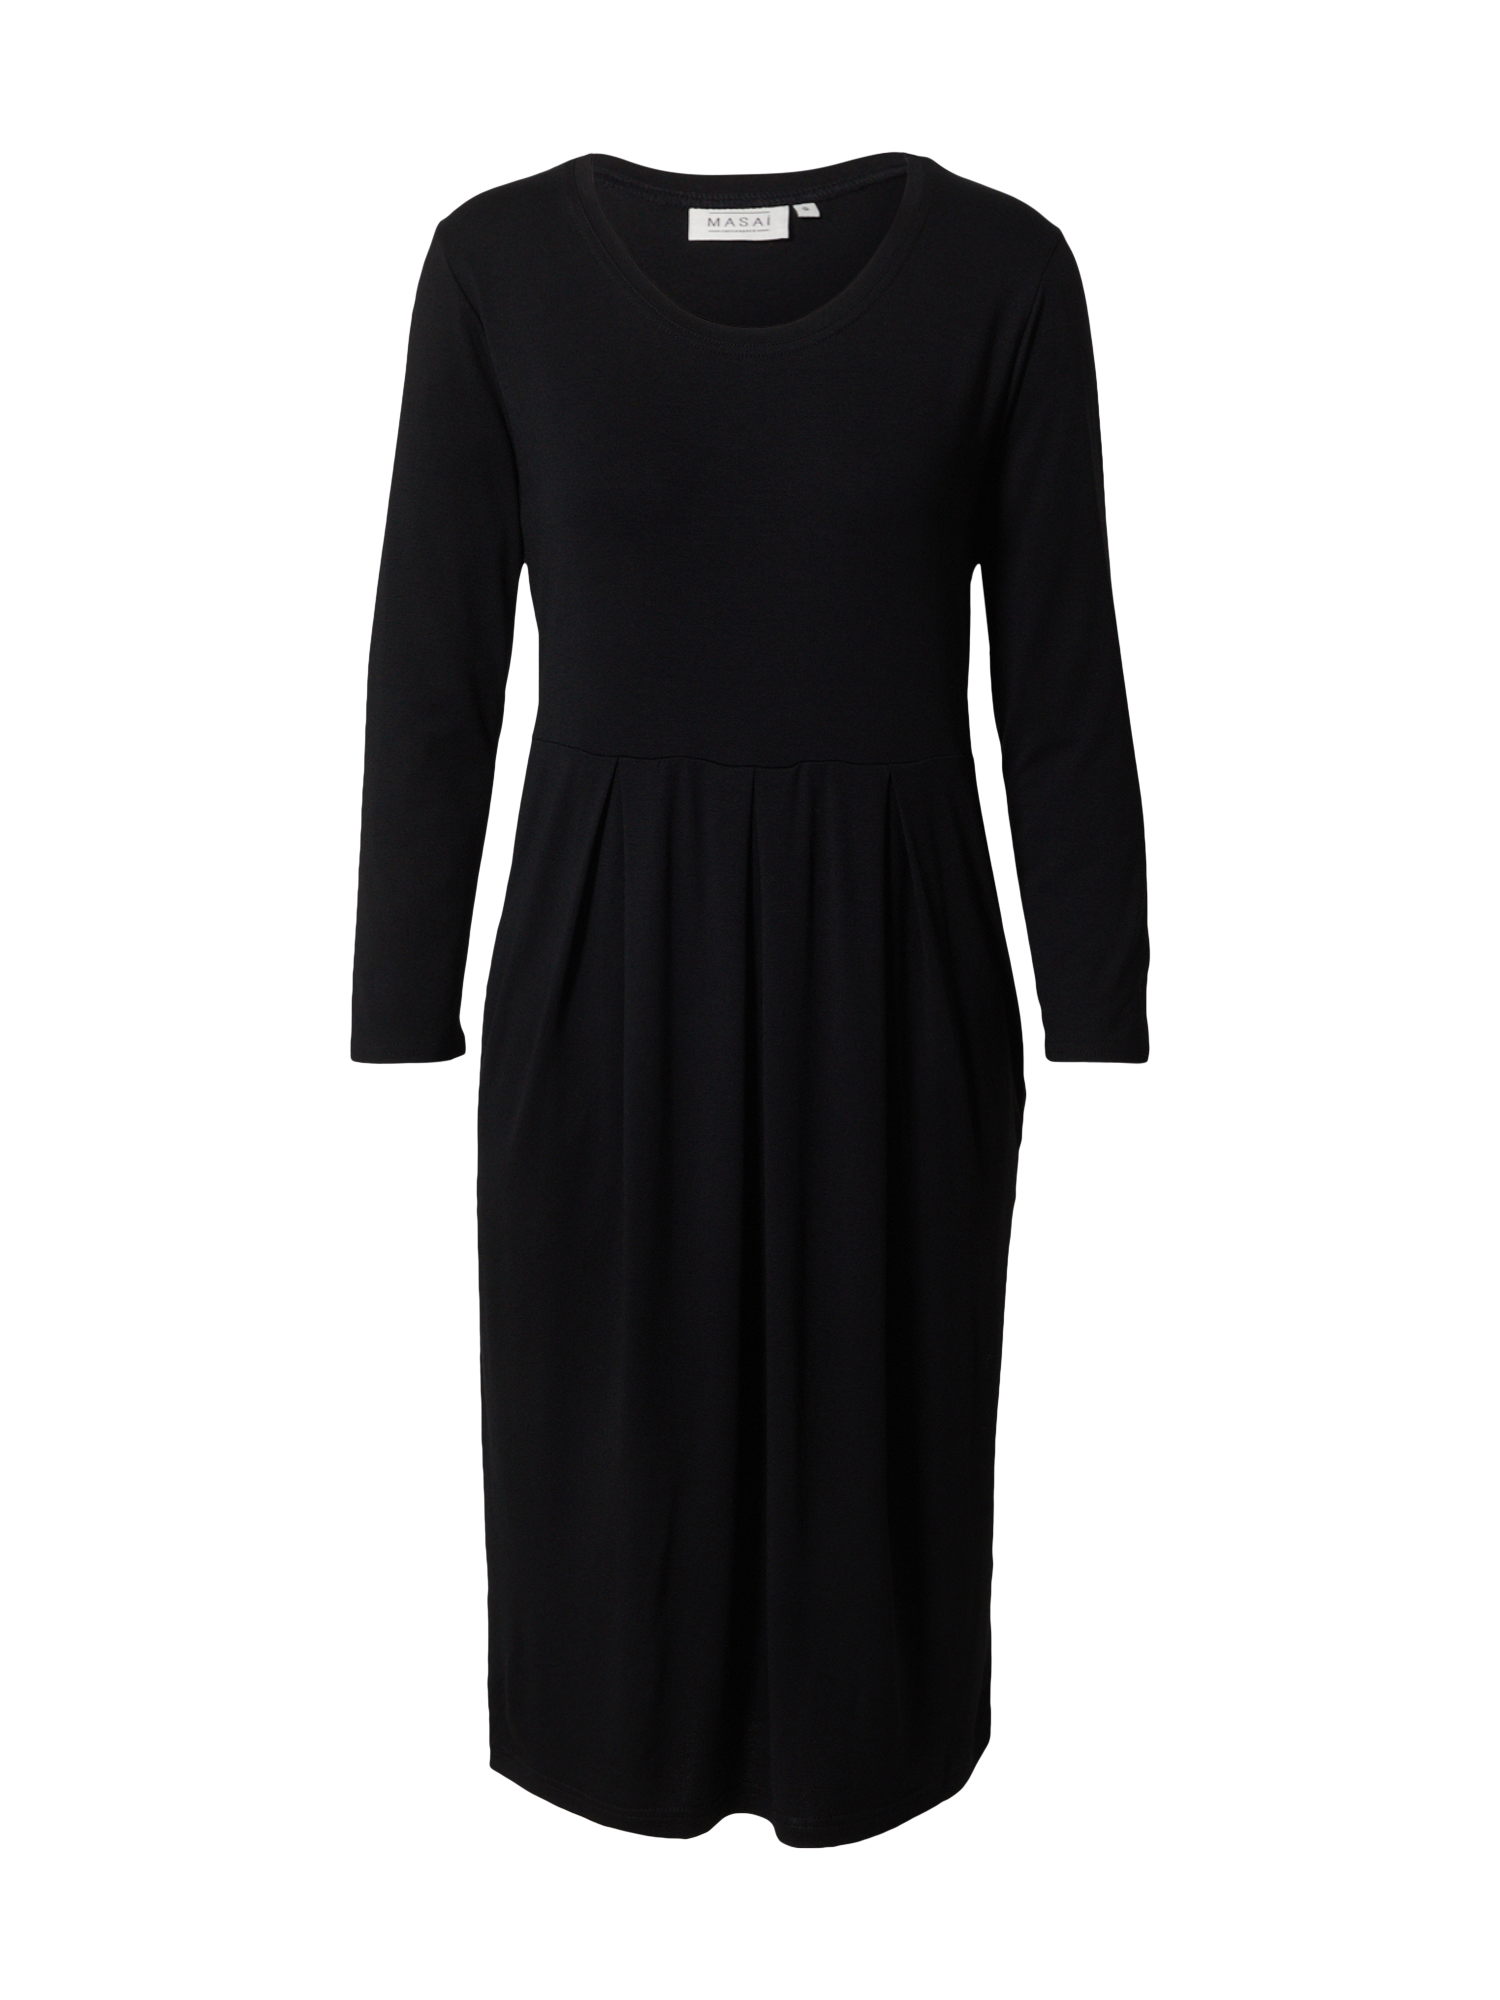 7qhjF Odzież Masai Sukienka Noma w kolorze Czarnym 